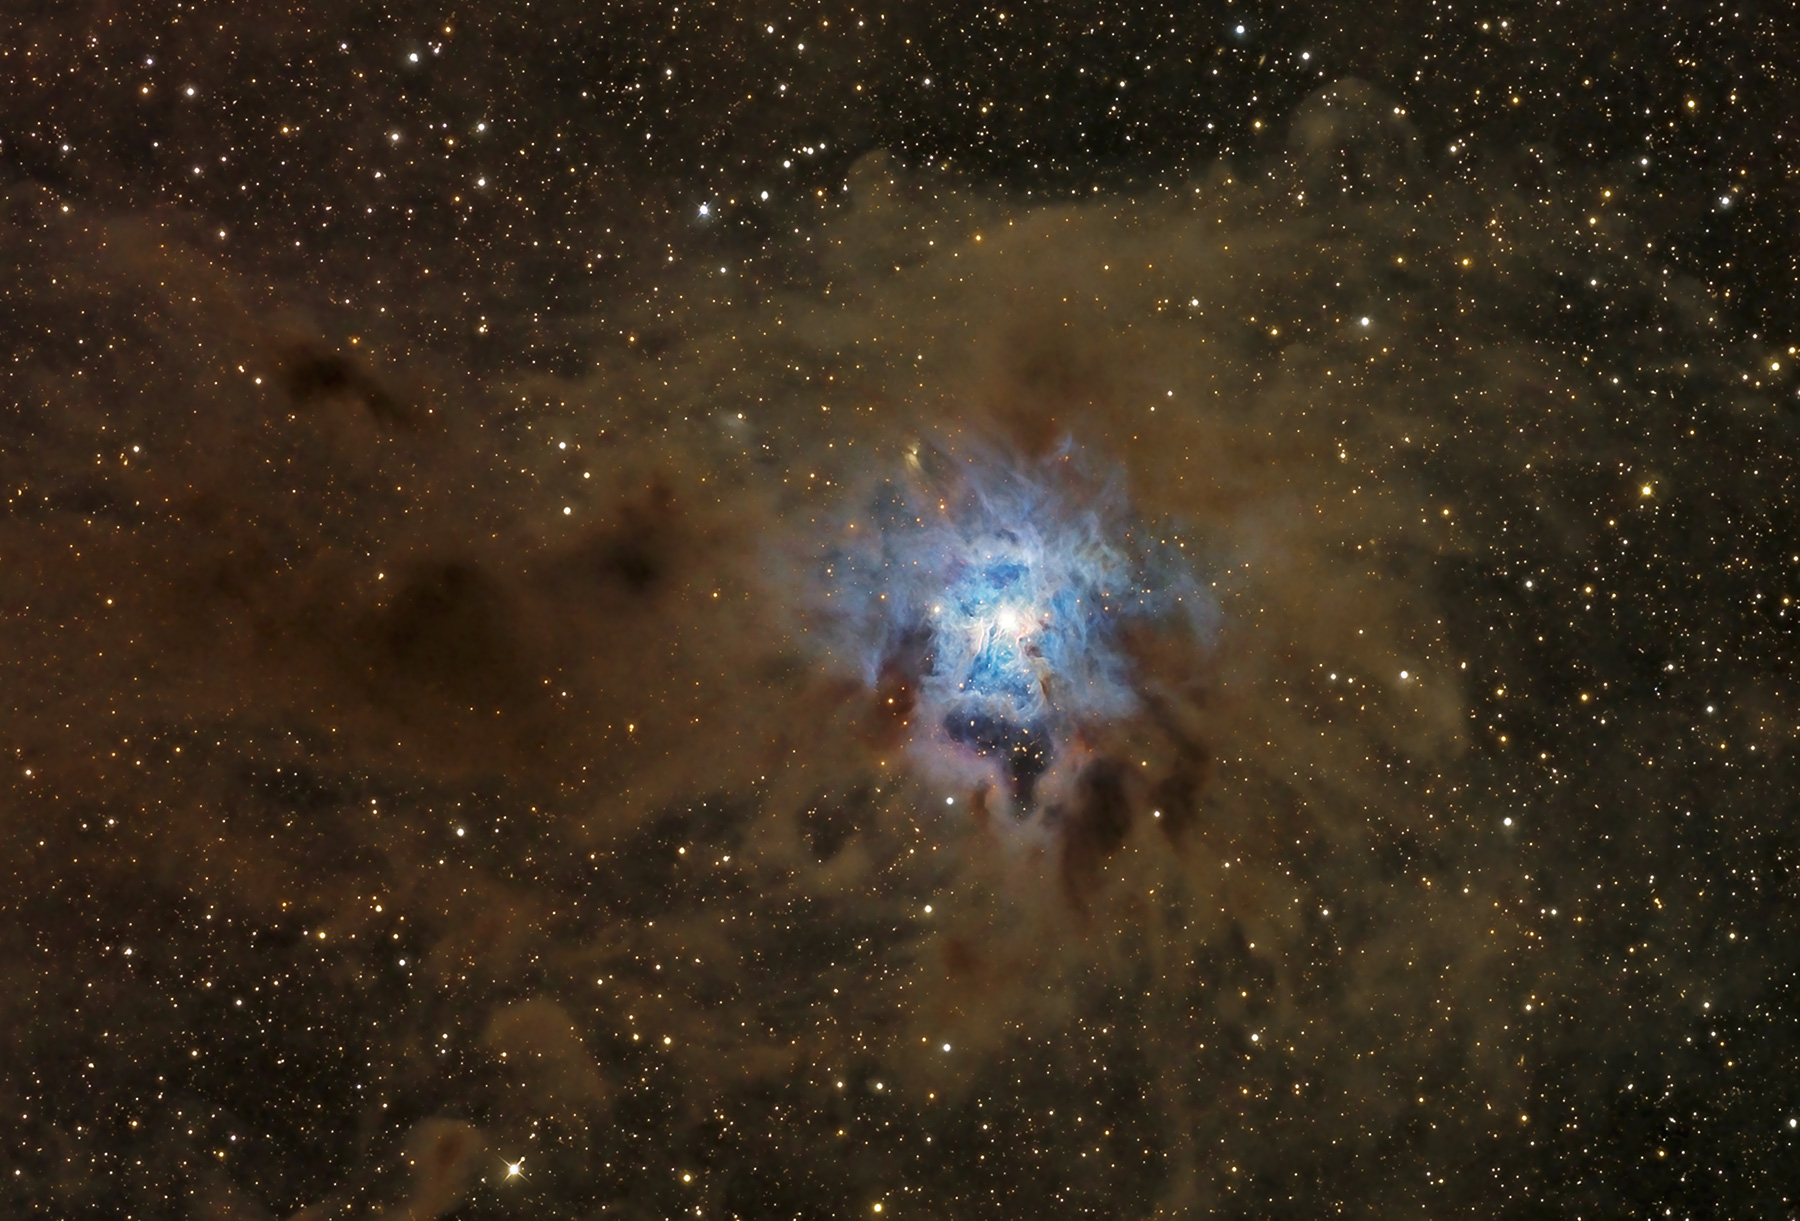 A Dusty Iris Nebula